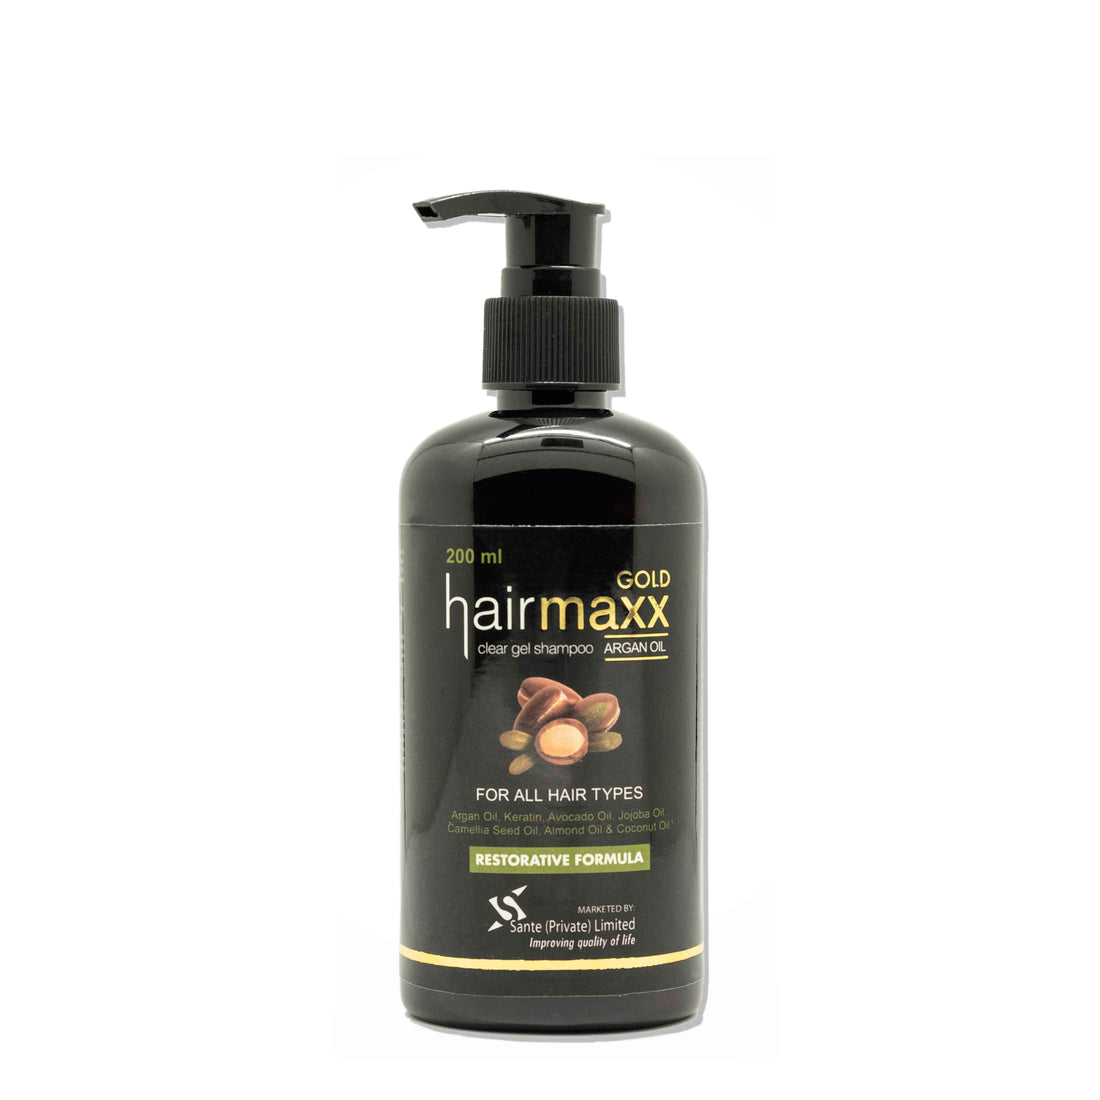 HairMaxx Shampoo (Gold)